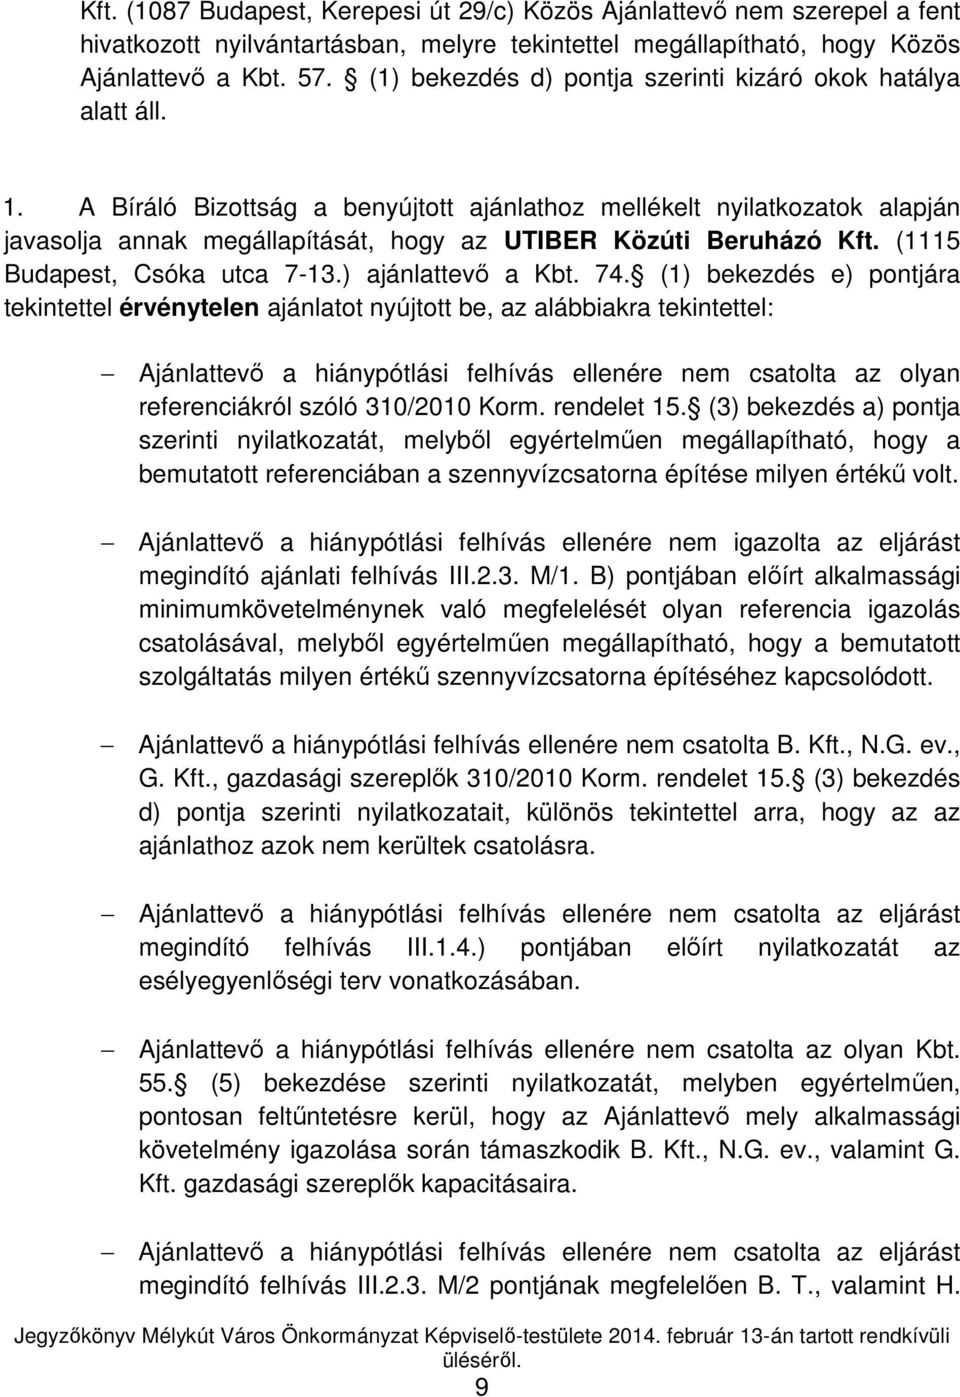 A Bíráló Bizottság a benyújtott ajánlathoz mellékelt nyilatkozatok alapján javasolja annak megállapítását, hogy az UTIBER Közúti Beruházó Kft. (1115 Budapest, Csóka utca 7-13.) ajánlattevő a Kbt. 74.